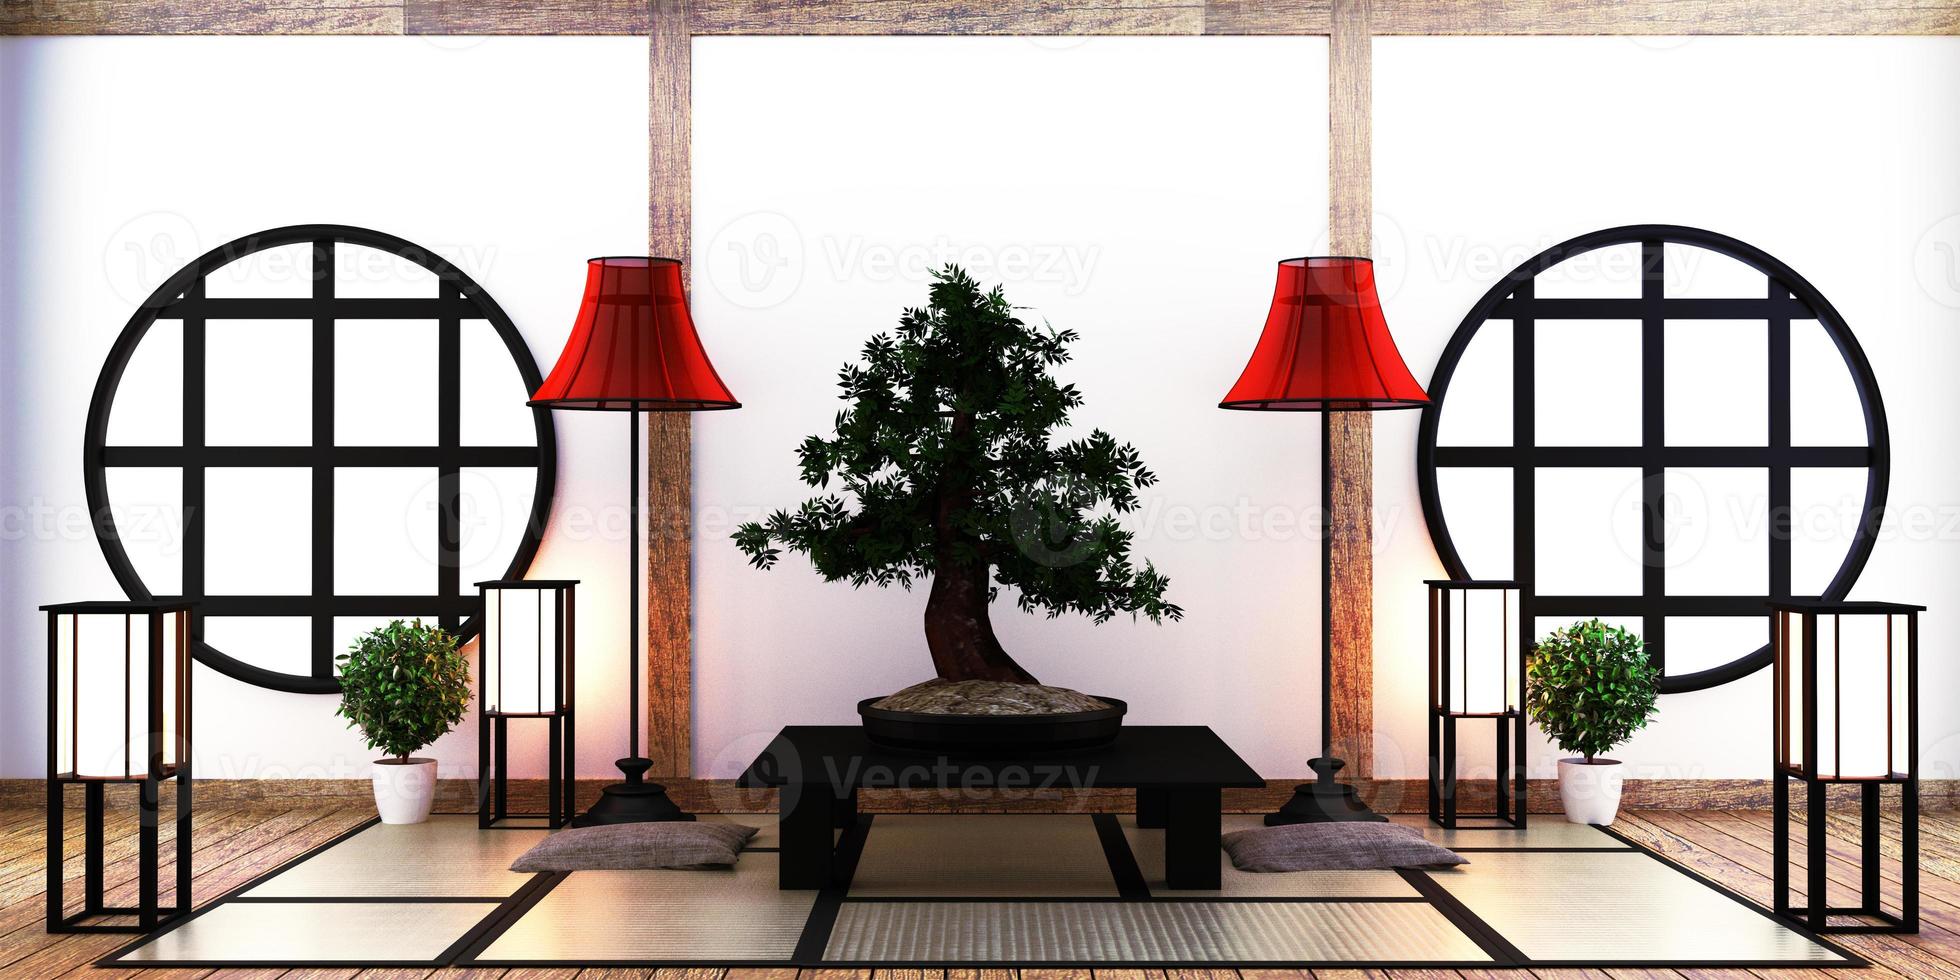 Sala de estar japonesa con lámpara, armazón, mesita baja negra y bonsái en sala pared blanca en piso tapete de tatami. Representación 3d foto